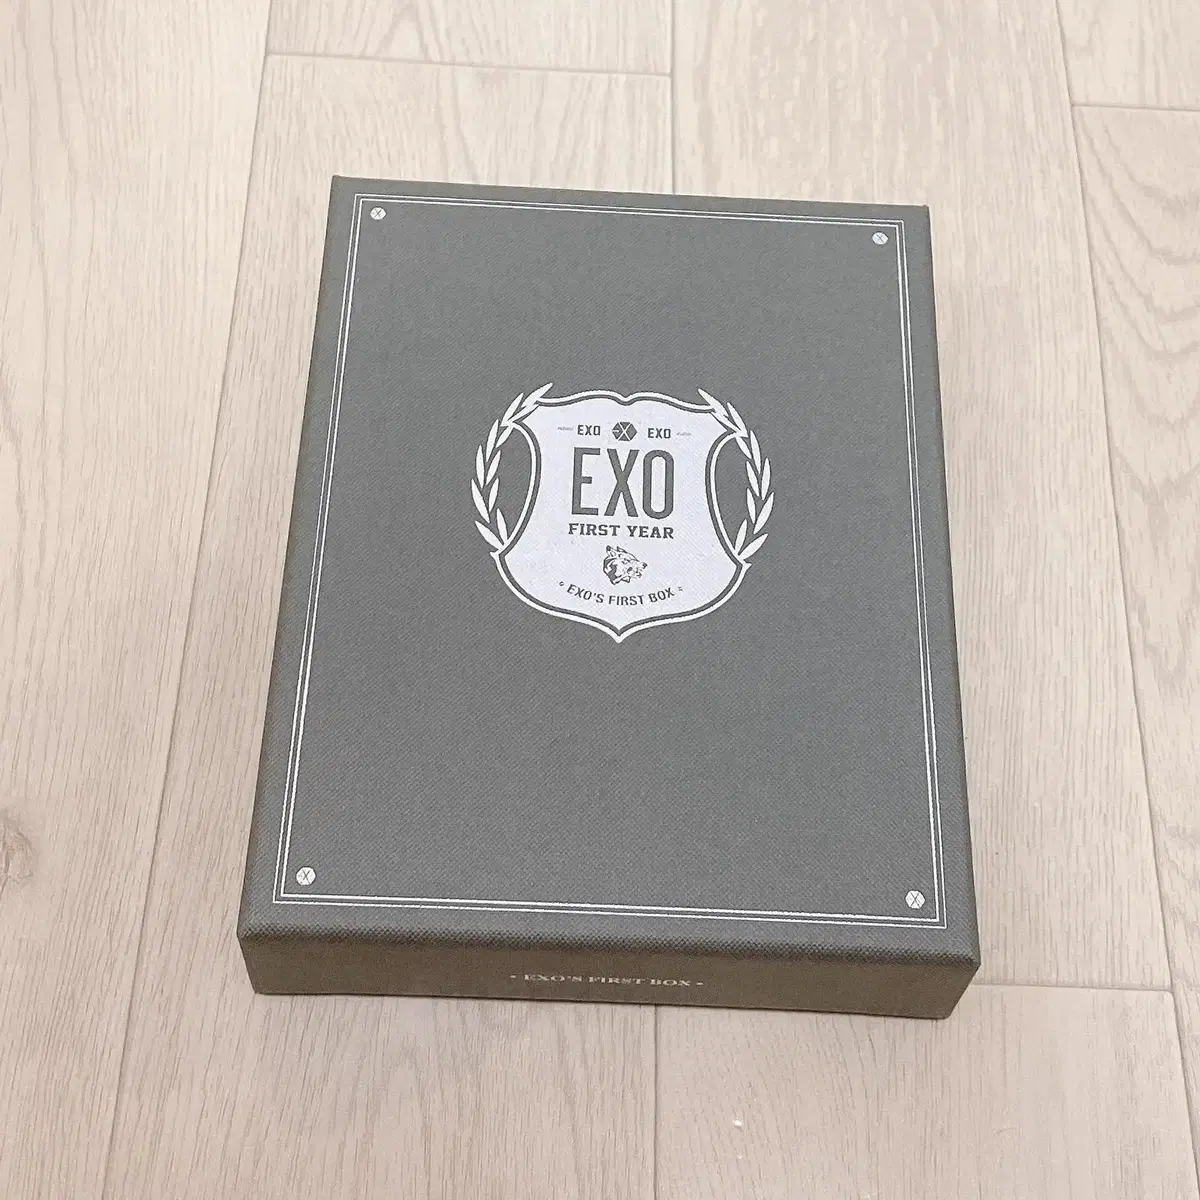 엑소(EXO) First Box DVD 브랜드 중고거래 플랫폼, 번개장터